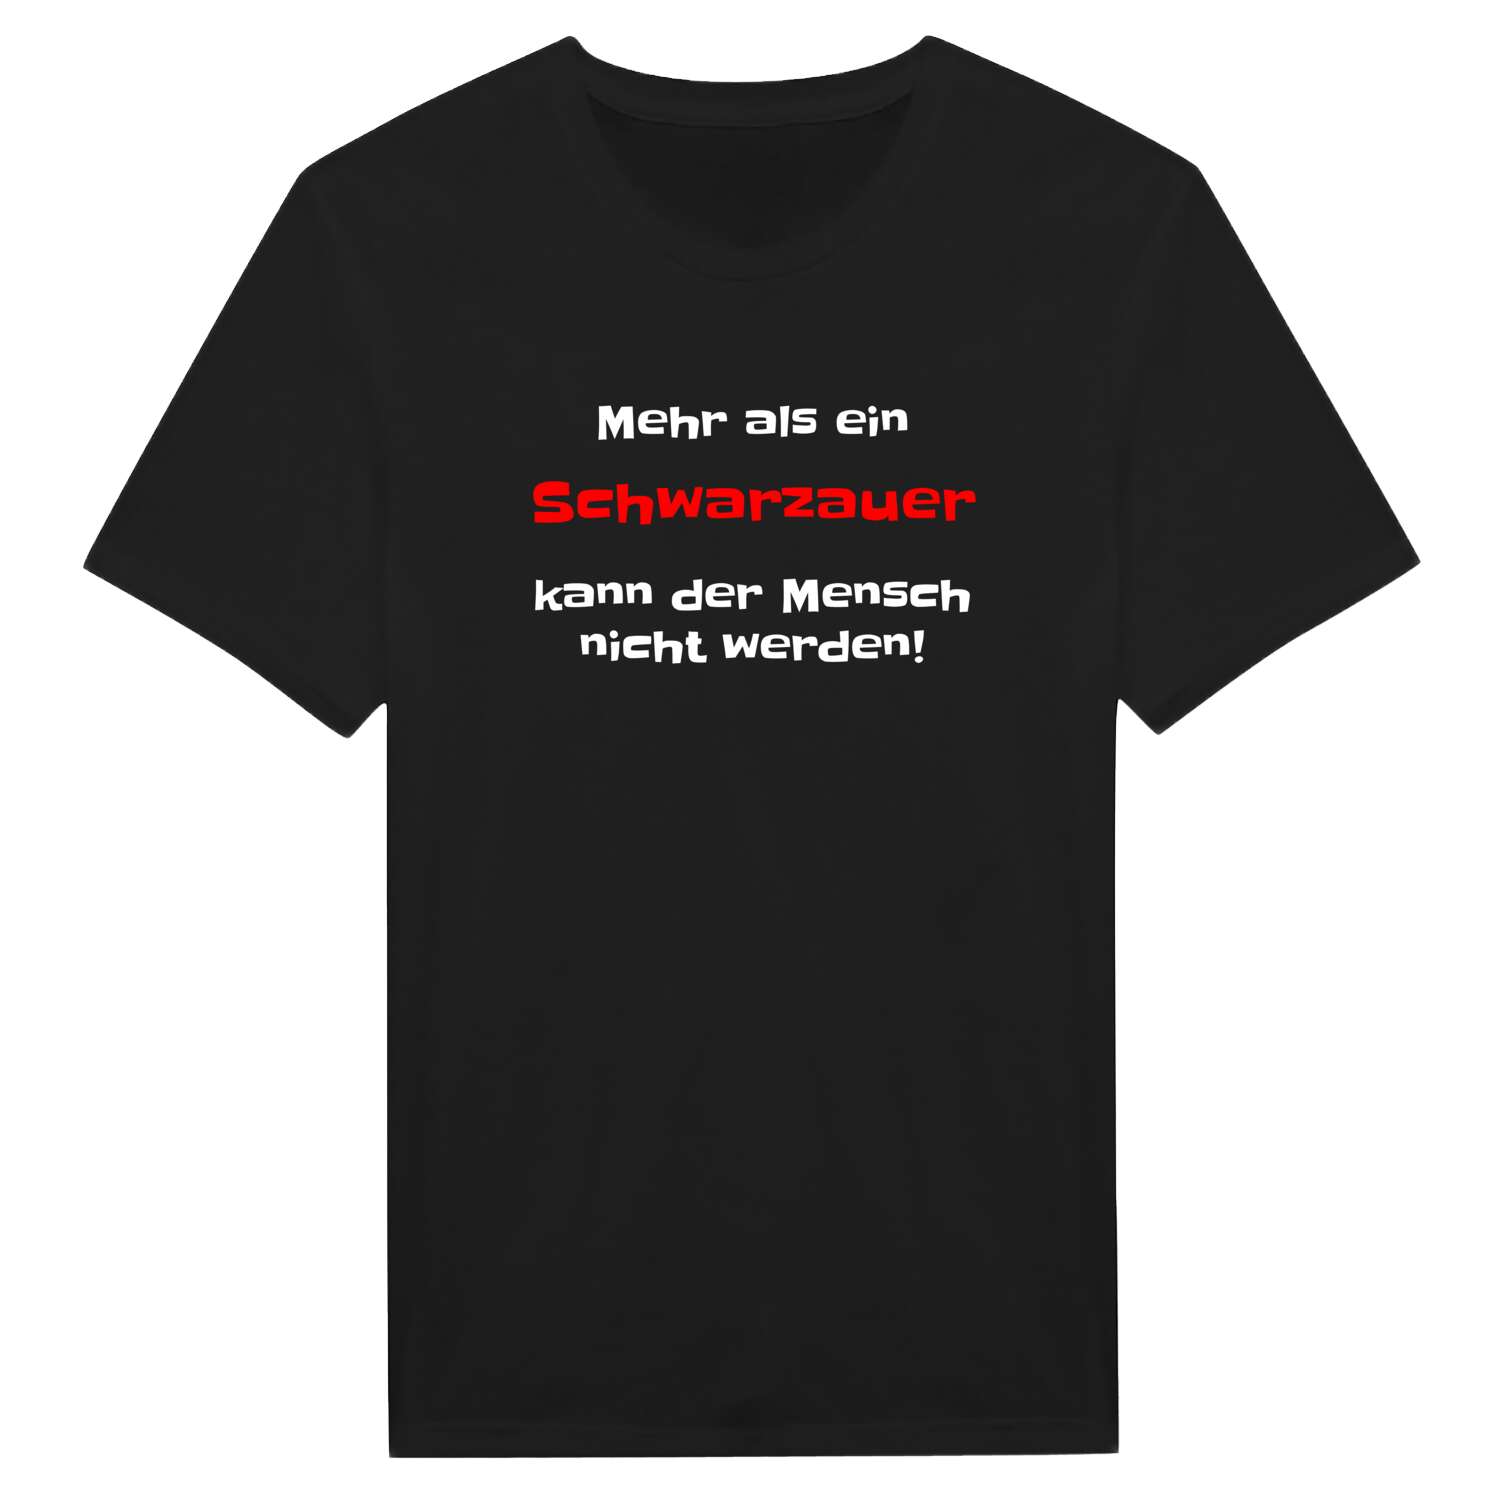 Schwarzau T-Shirt »Mehr als ein«